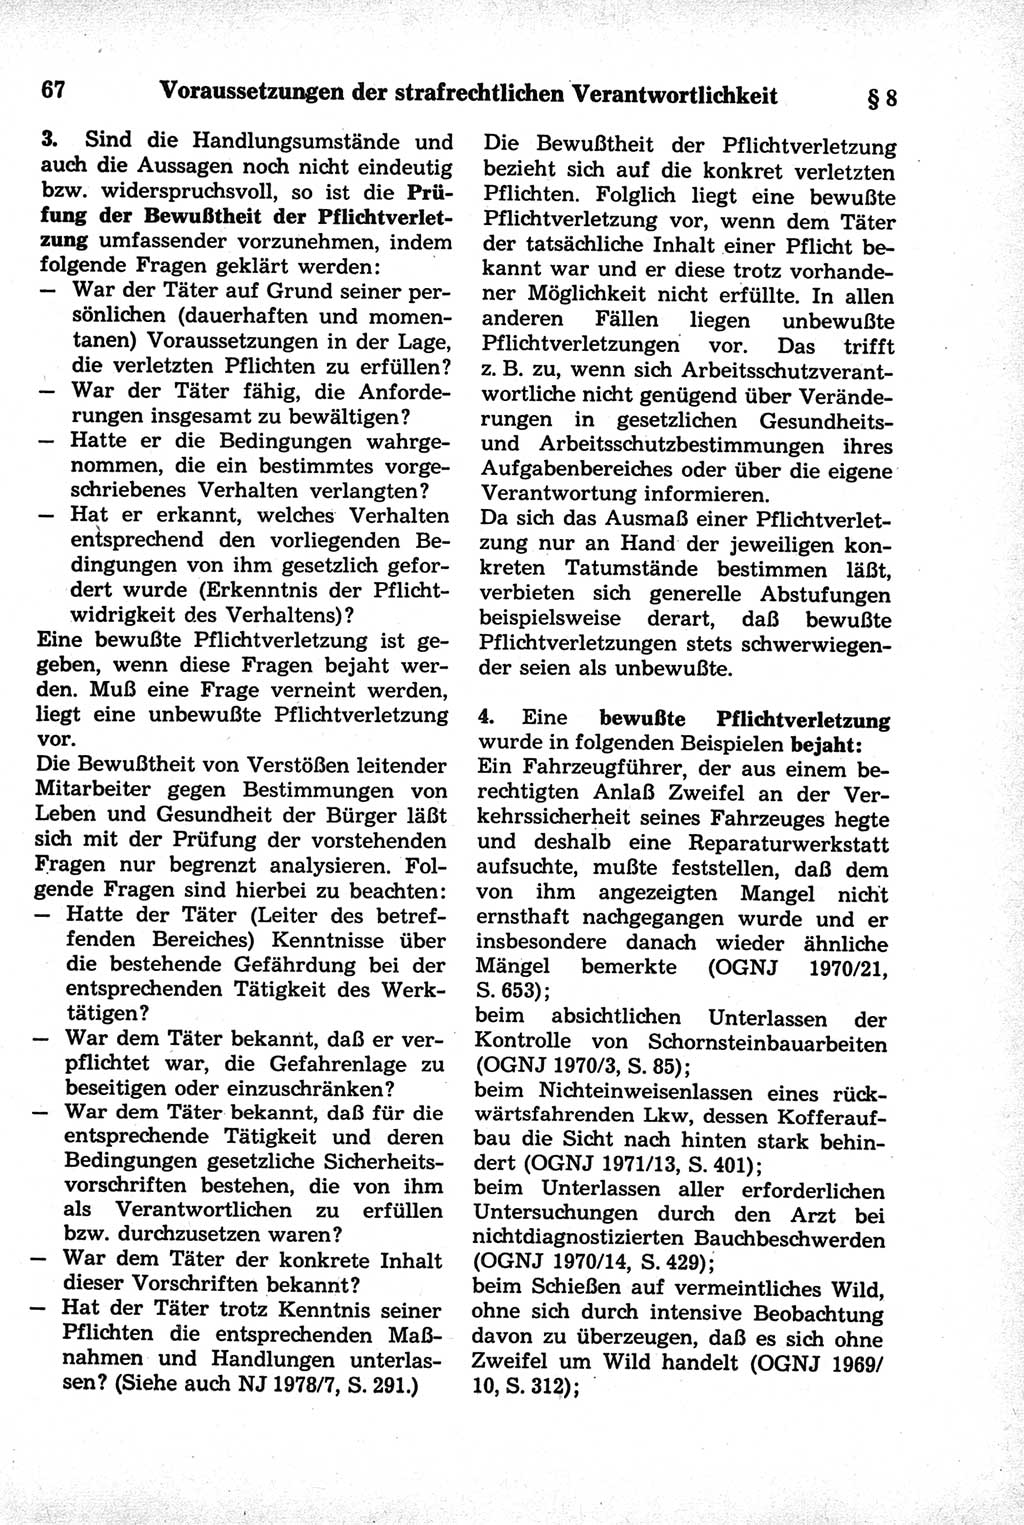 Strafrecht der Deutschen Demokratischen Republik (DDR), Kommentar zum Strafgesetzbuch (StGB) 1981, Seite 67 (Strafr. DDR Komm. StGB 1981, S. 67)